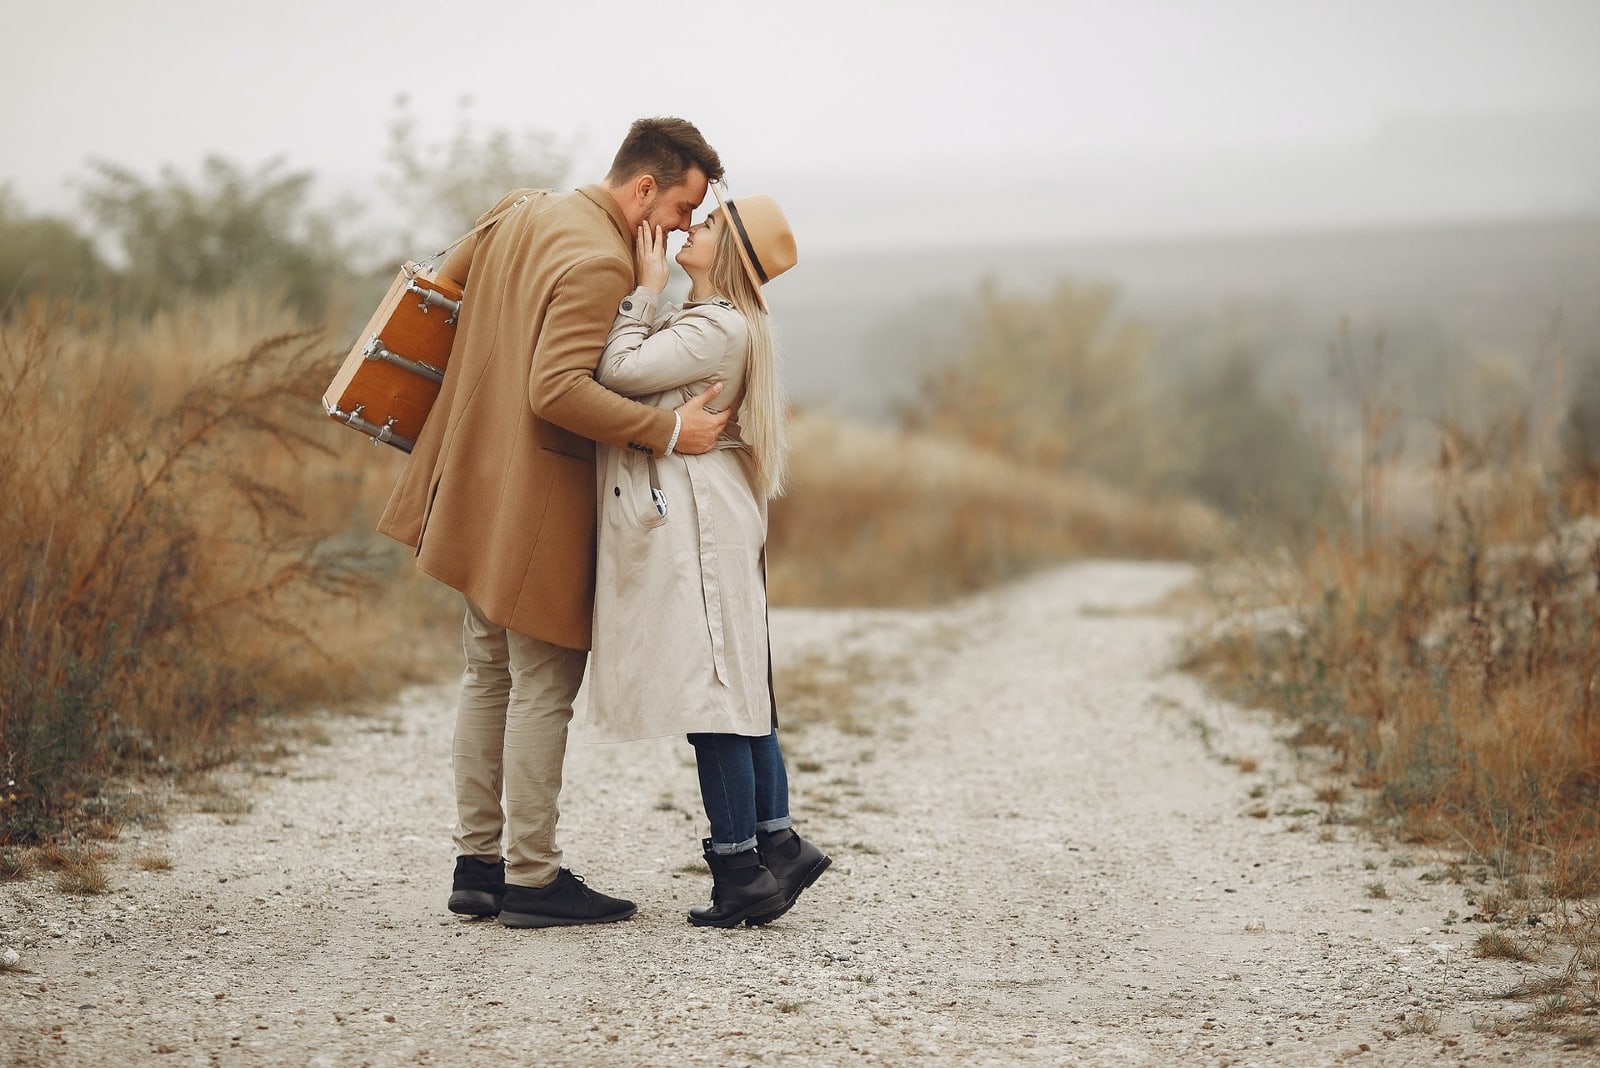 uomo e donna in procinto di baciarsi in piedi su un sentiero rurale